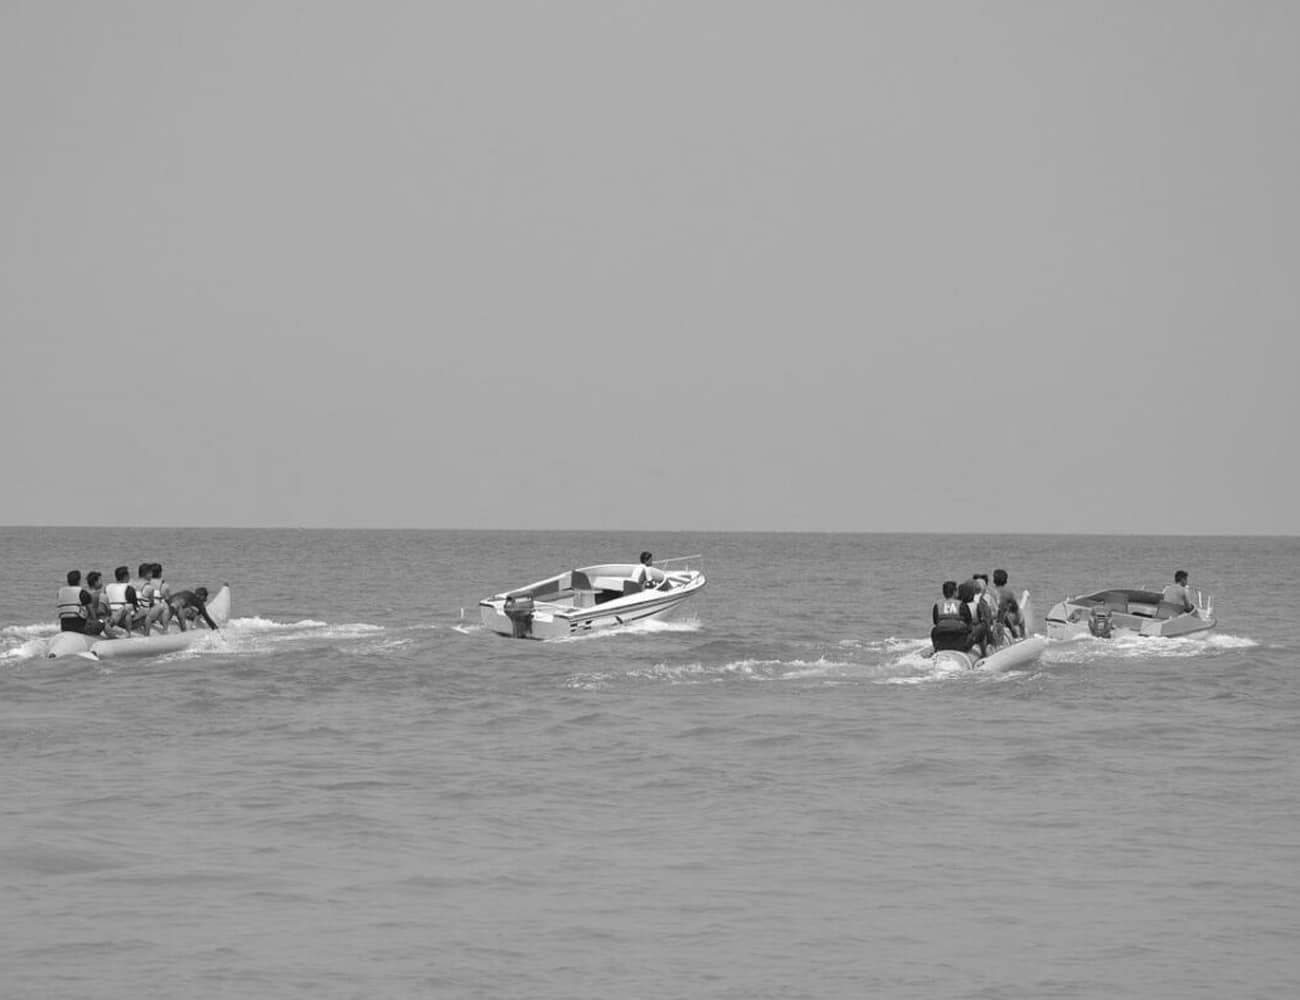 Water Sport Activities in Zanzibar